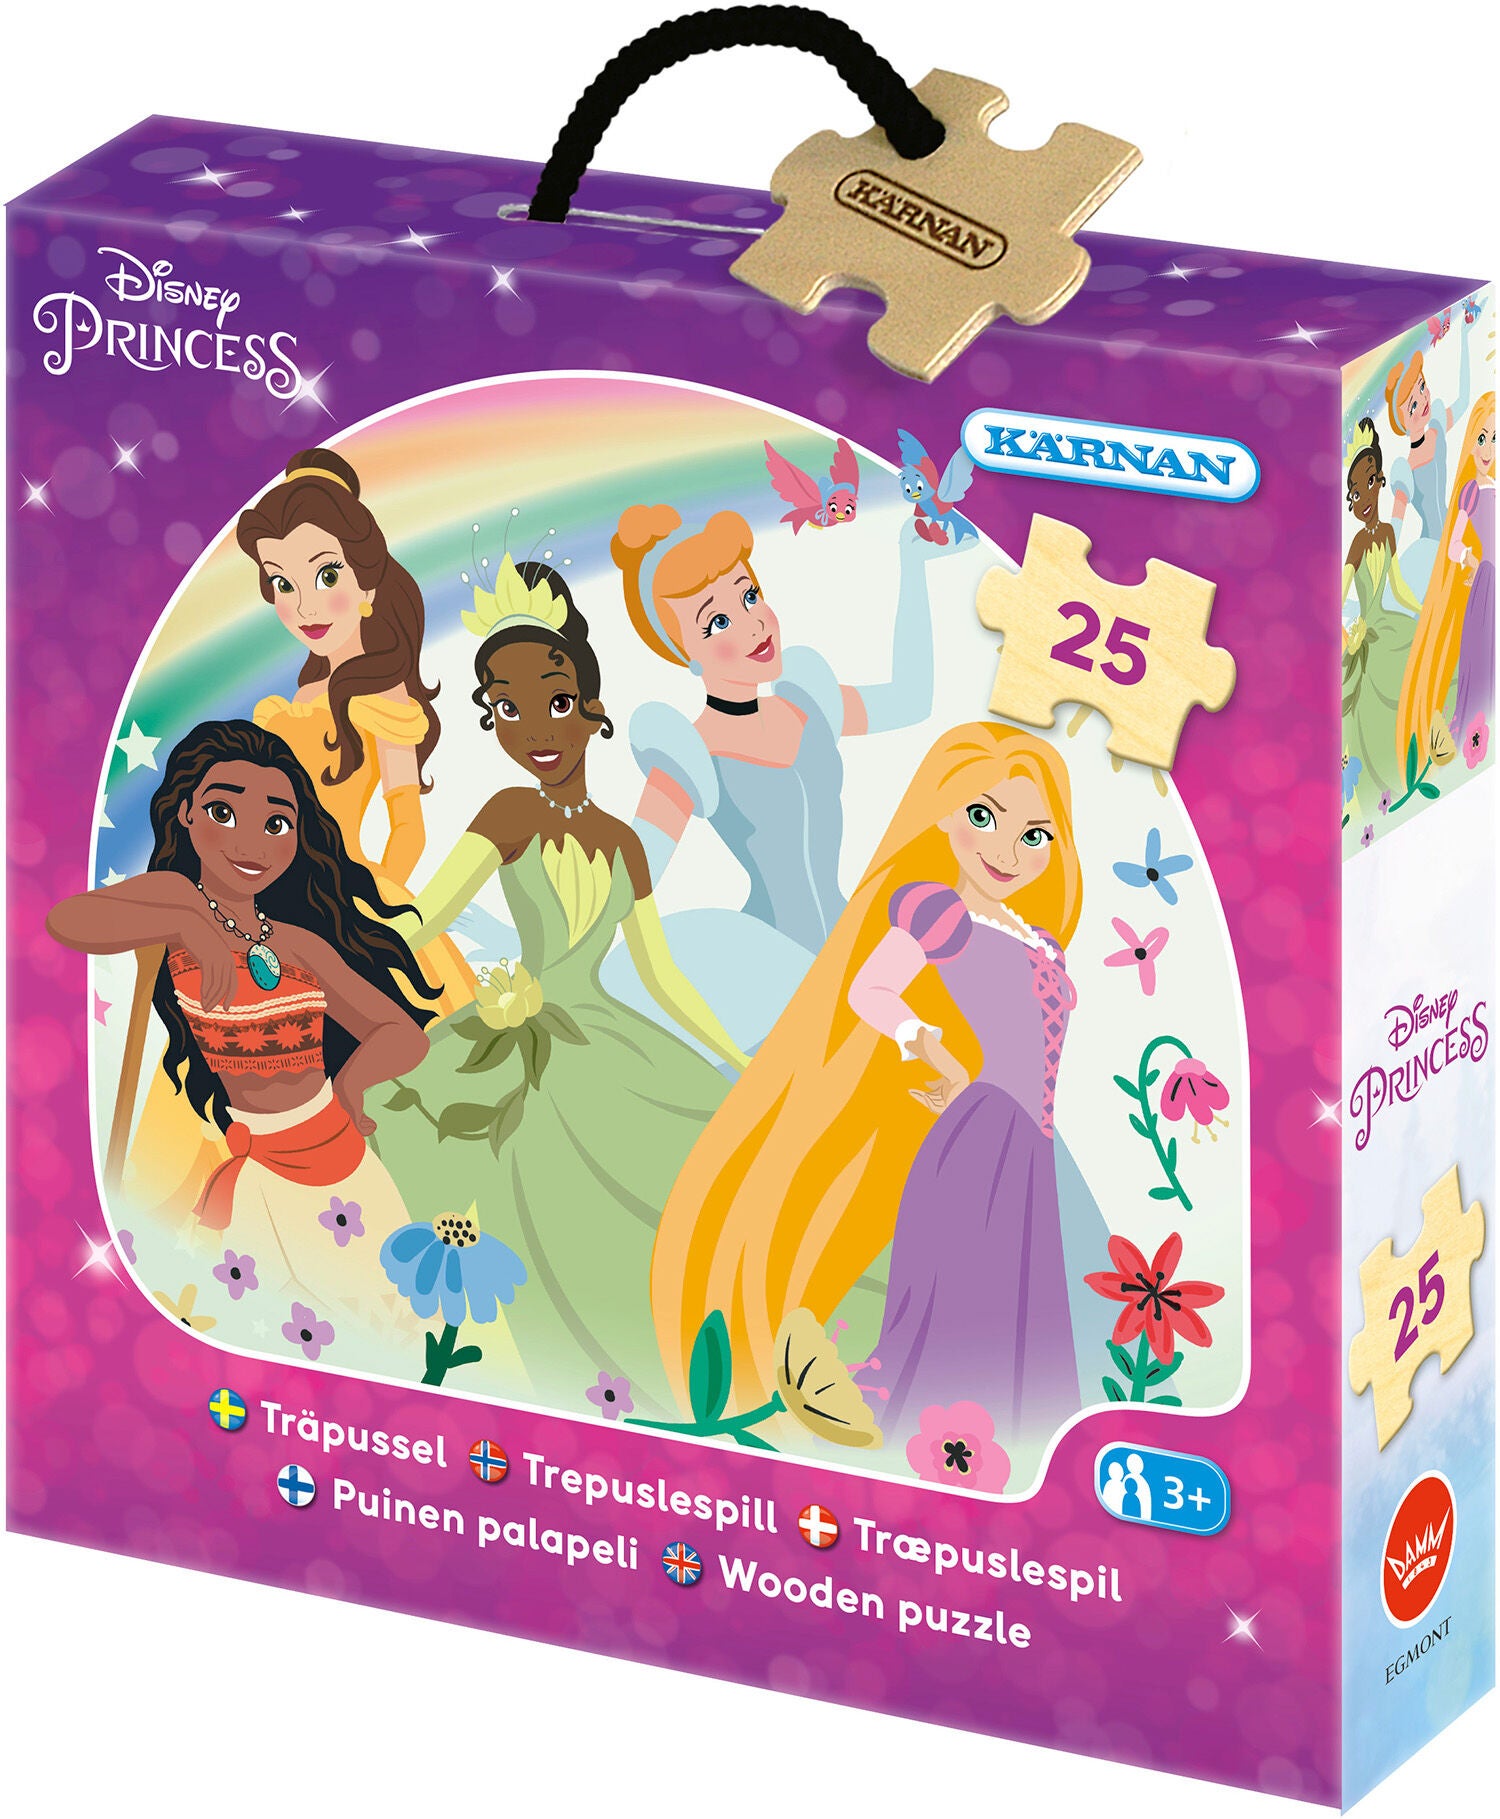 Disney Princess Holzpuzzle 25 Teile von Disney Prinzessin